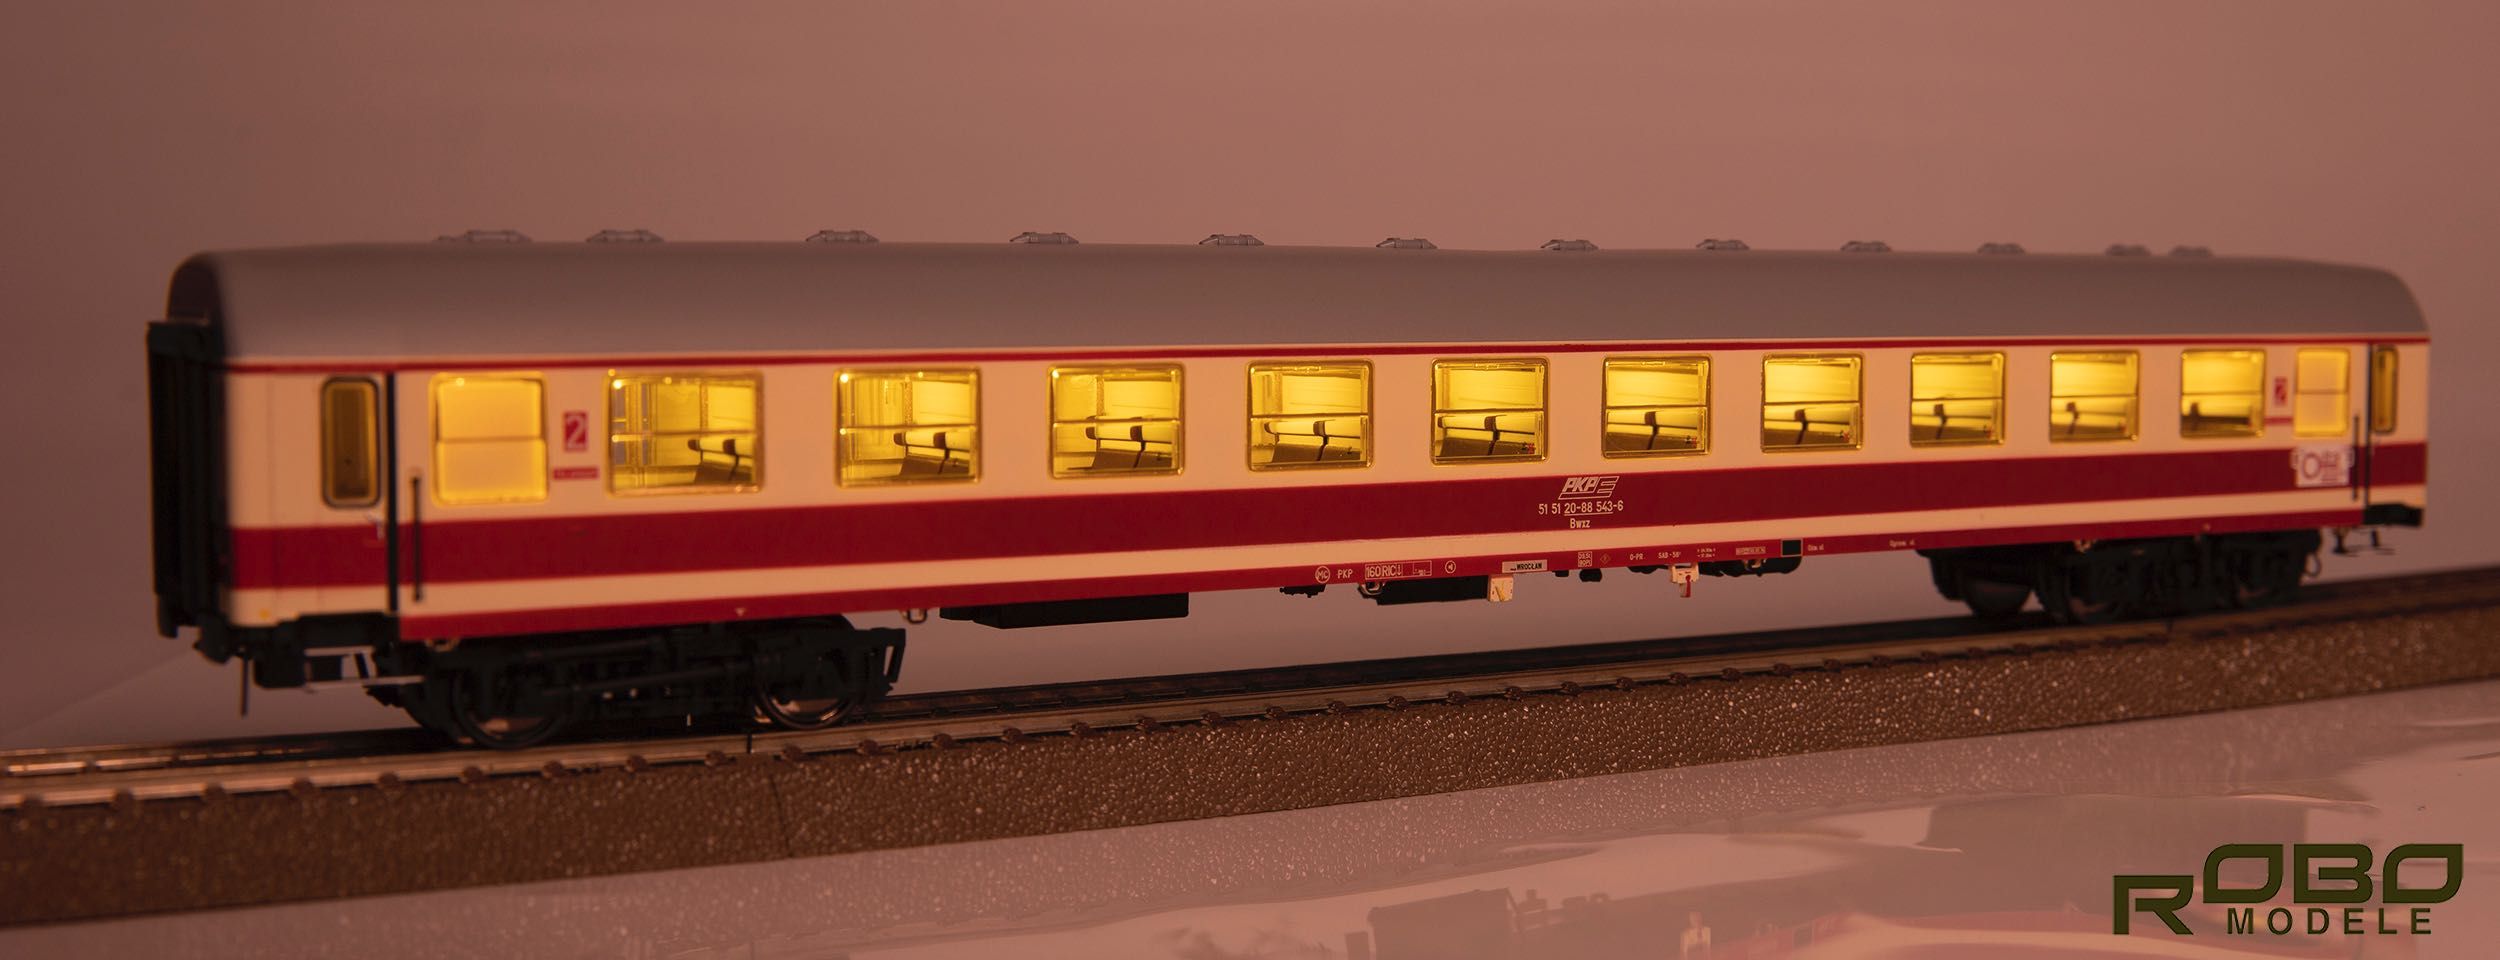 ROBO Modele nr.2005.. -  zestaw 4 wagonów z oświetleniem